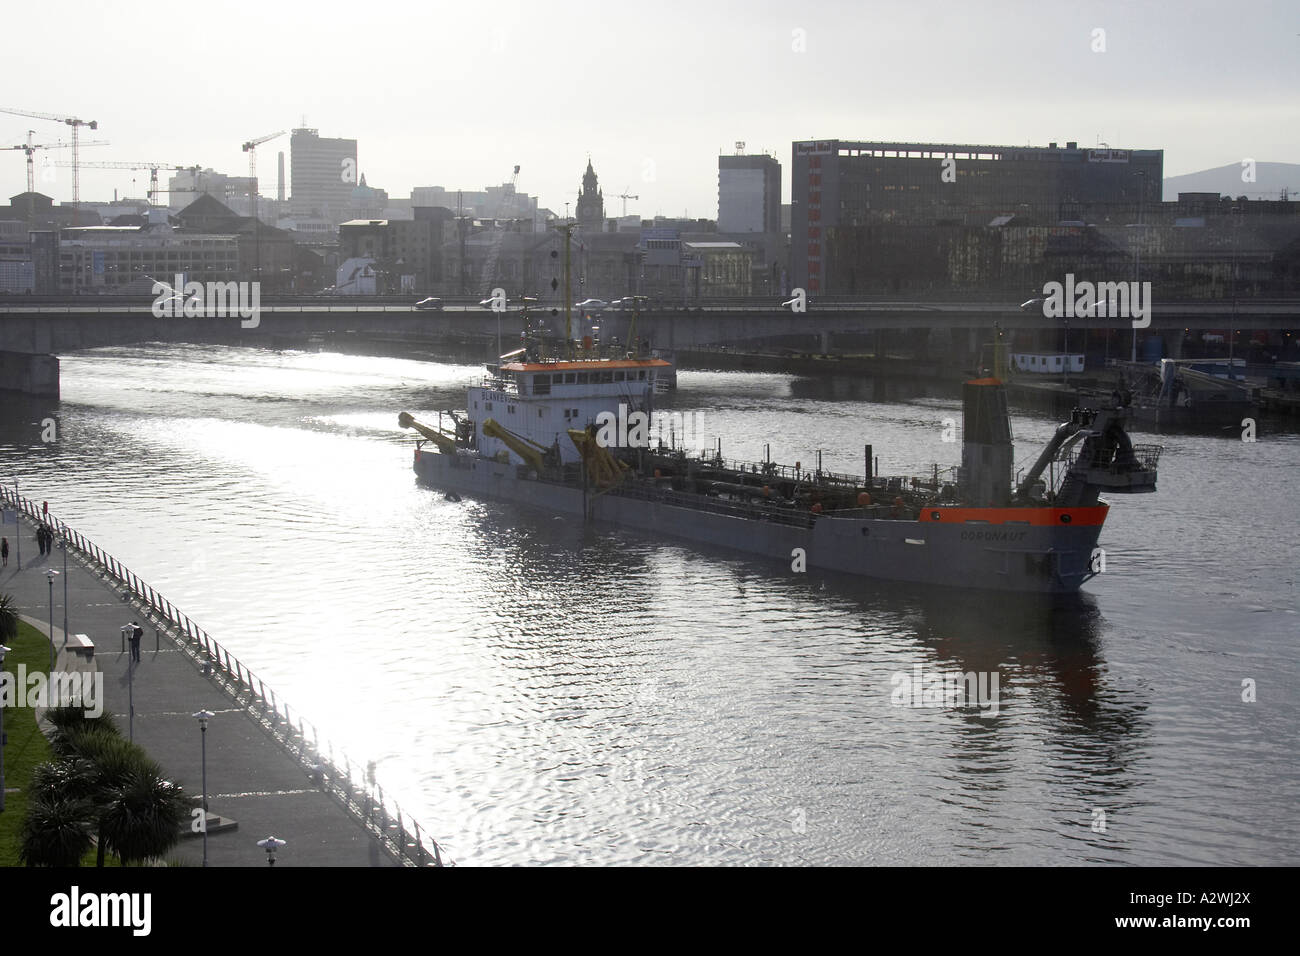 Fluss Lagan in Belfast Hafen docks mit Kräne und Schiffe Nordirland Vereinigtes Königreich Stockfoto